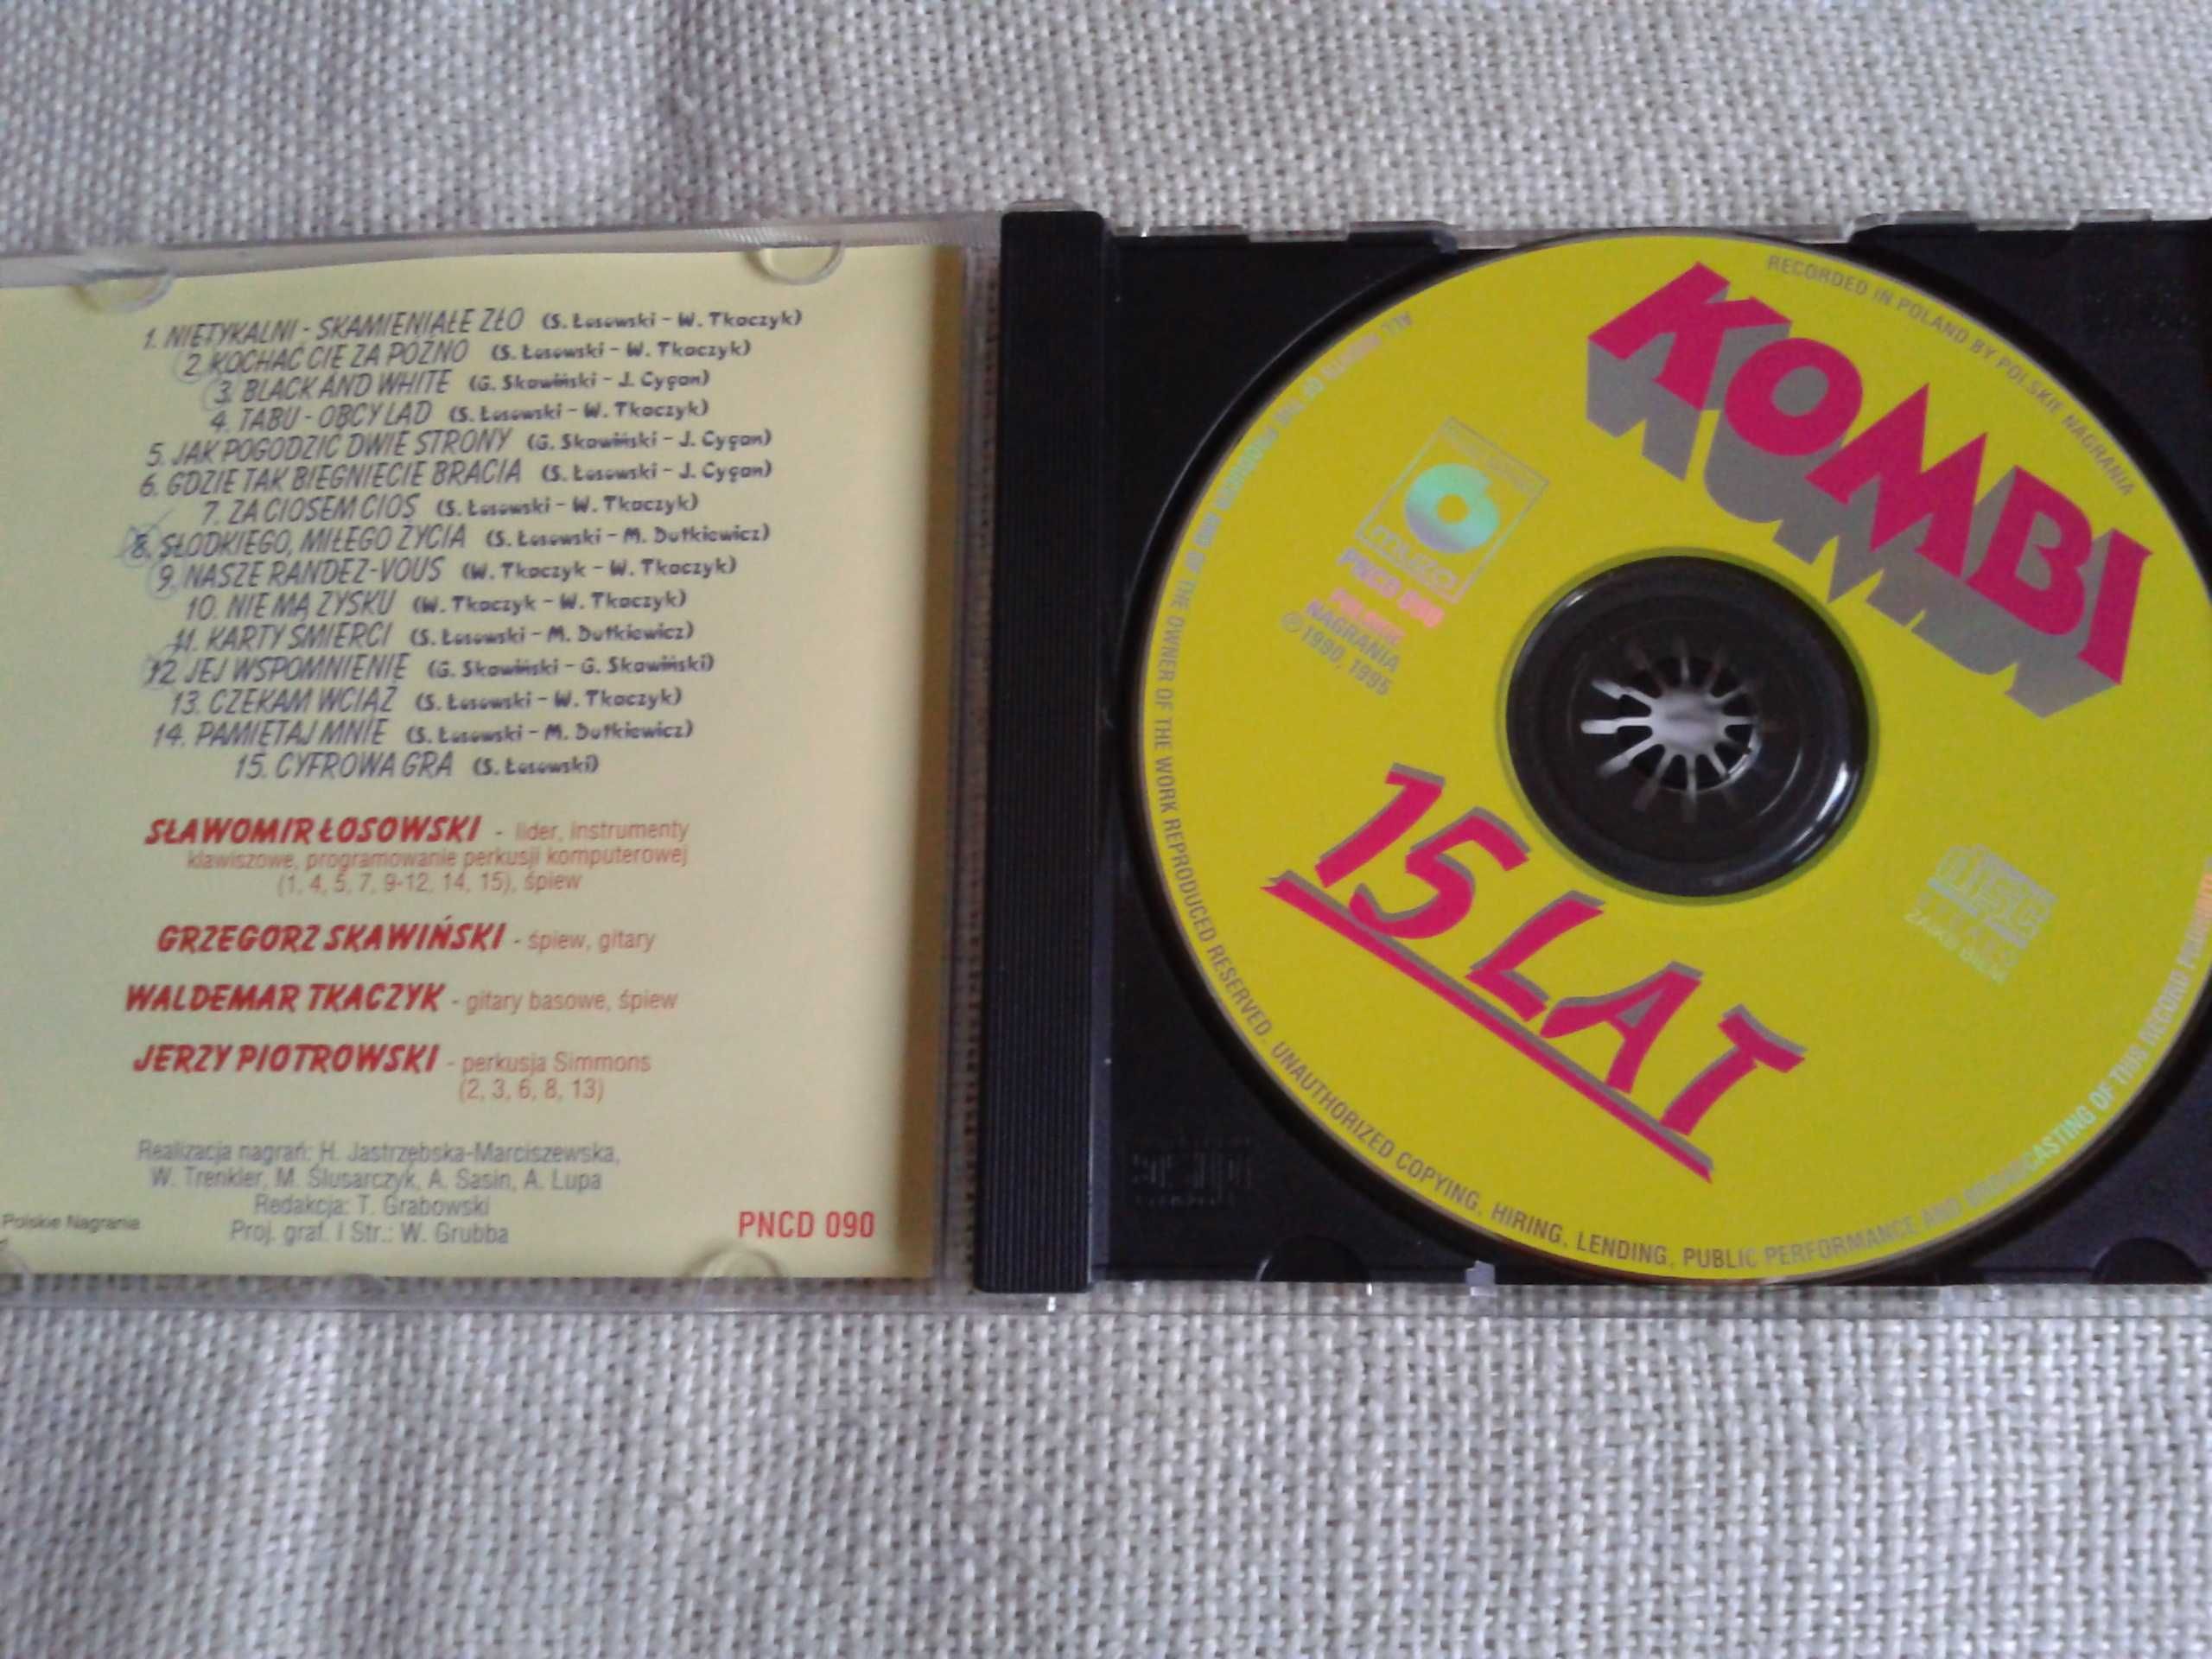 Kombi – 15 Lat  CD